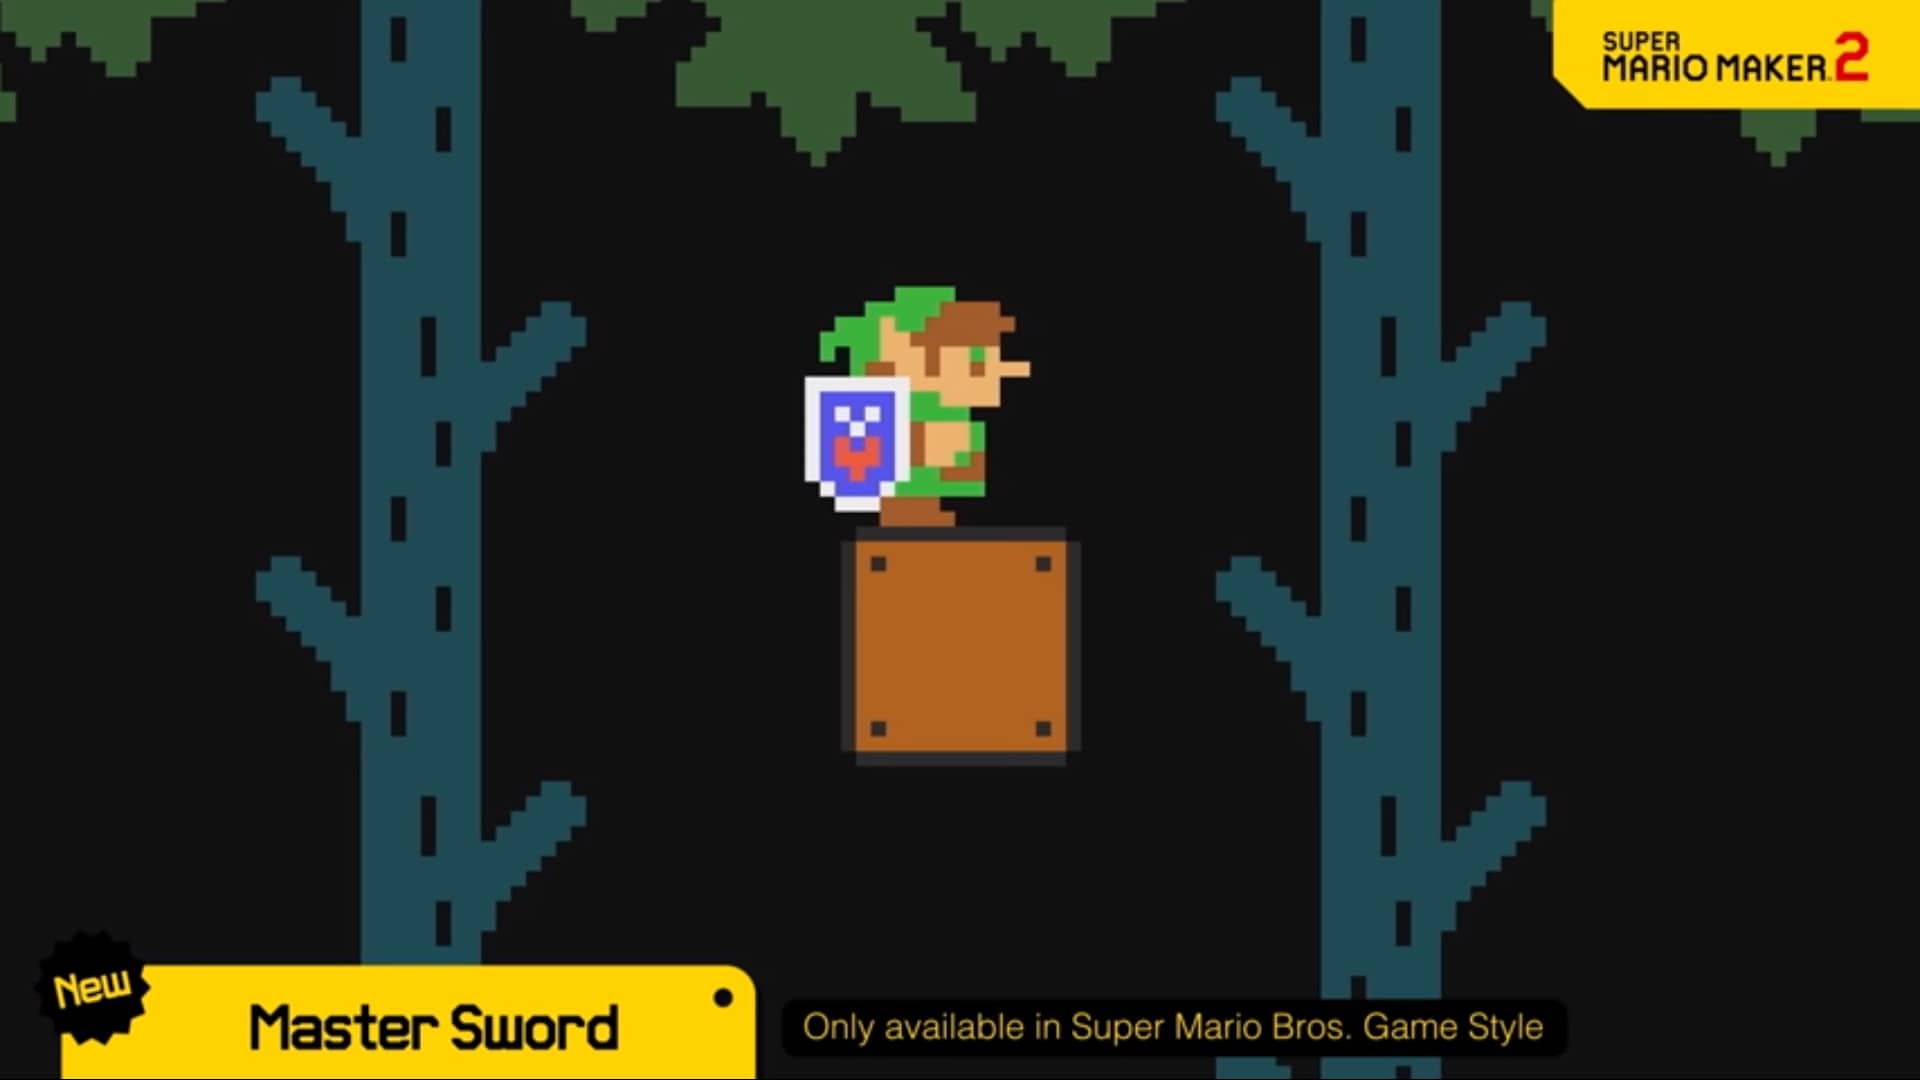 Super Mario Maker 2 agregará The Master Sword y Link